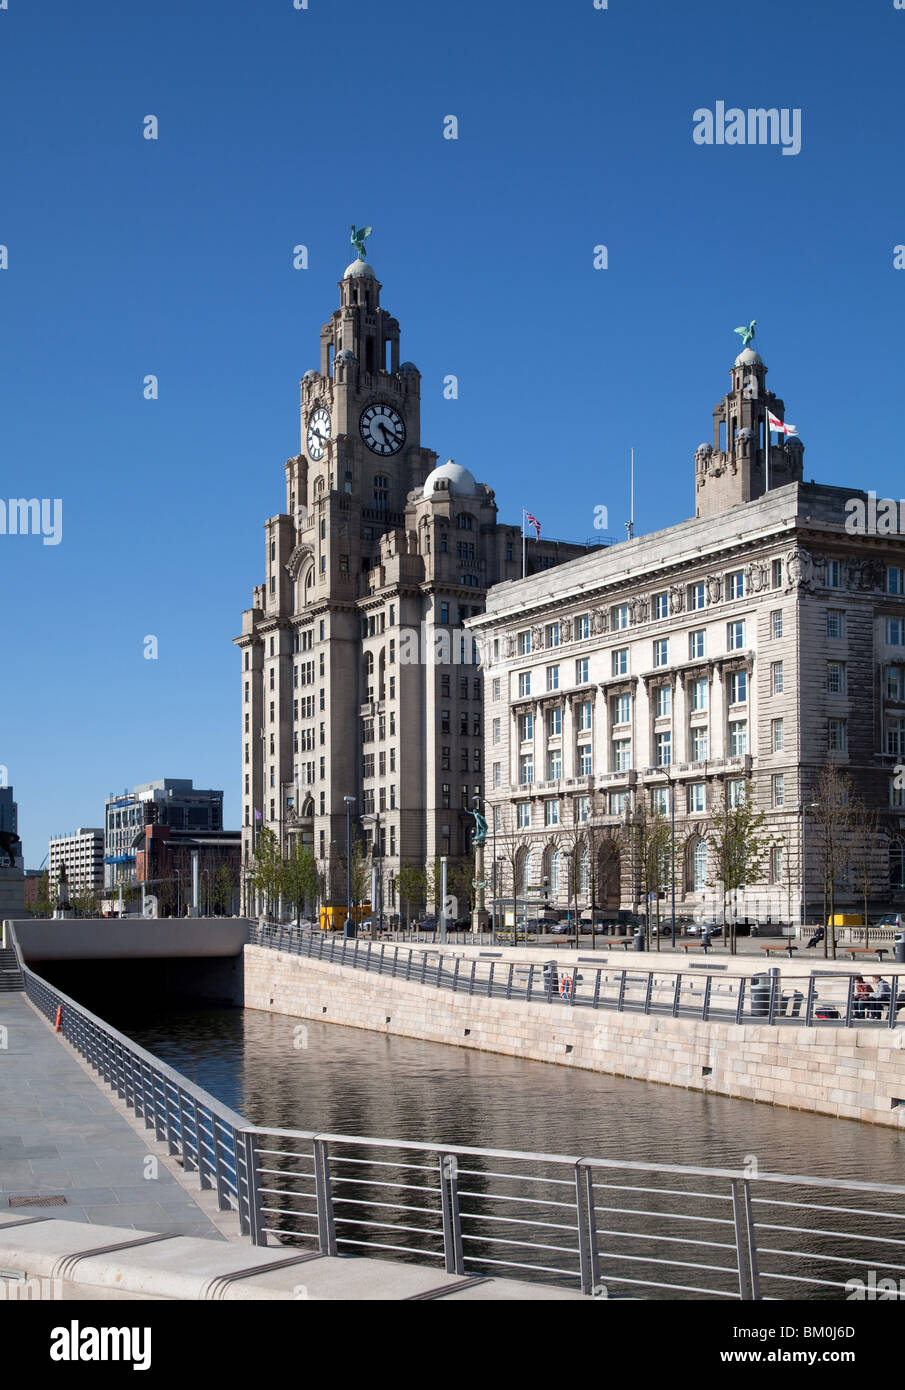 Royal Liver Building et Cunard Building avec nouvelle extension canal Leeds Liverpool en premier plan, Liverpool, Angleterre Banque D'Images